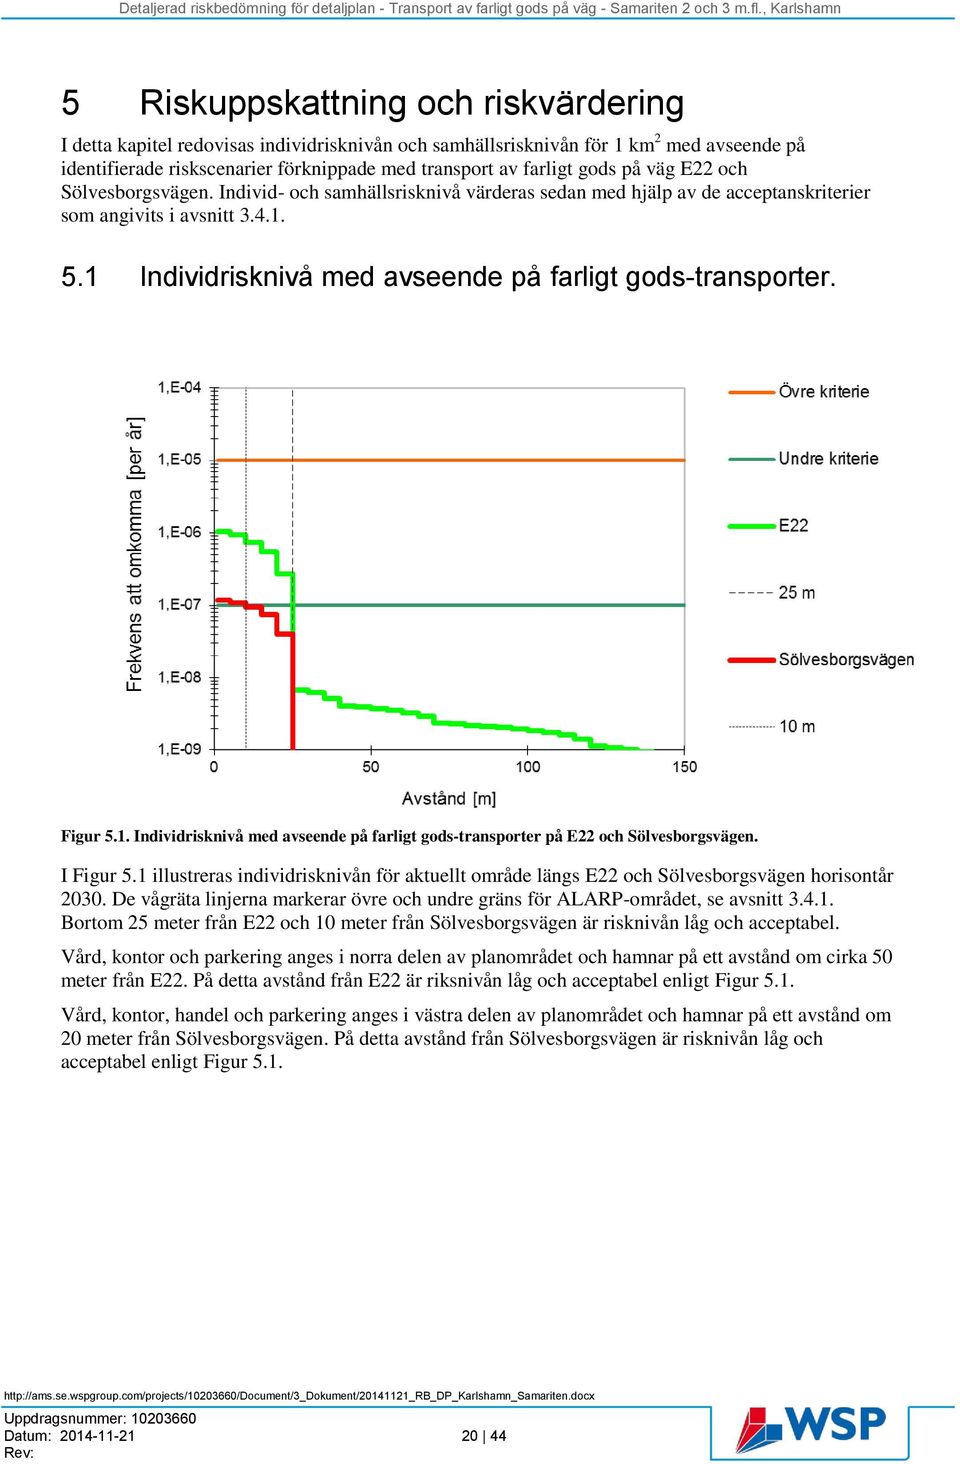 1 Individrisknivå med avseende på farligt gods-transporter. Figur 5.1. Individrisknivå med avseende på farligt gods-transporter på E22 och Sölvesborgsvägen. I Figur 5.